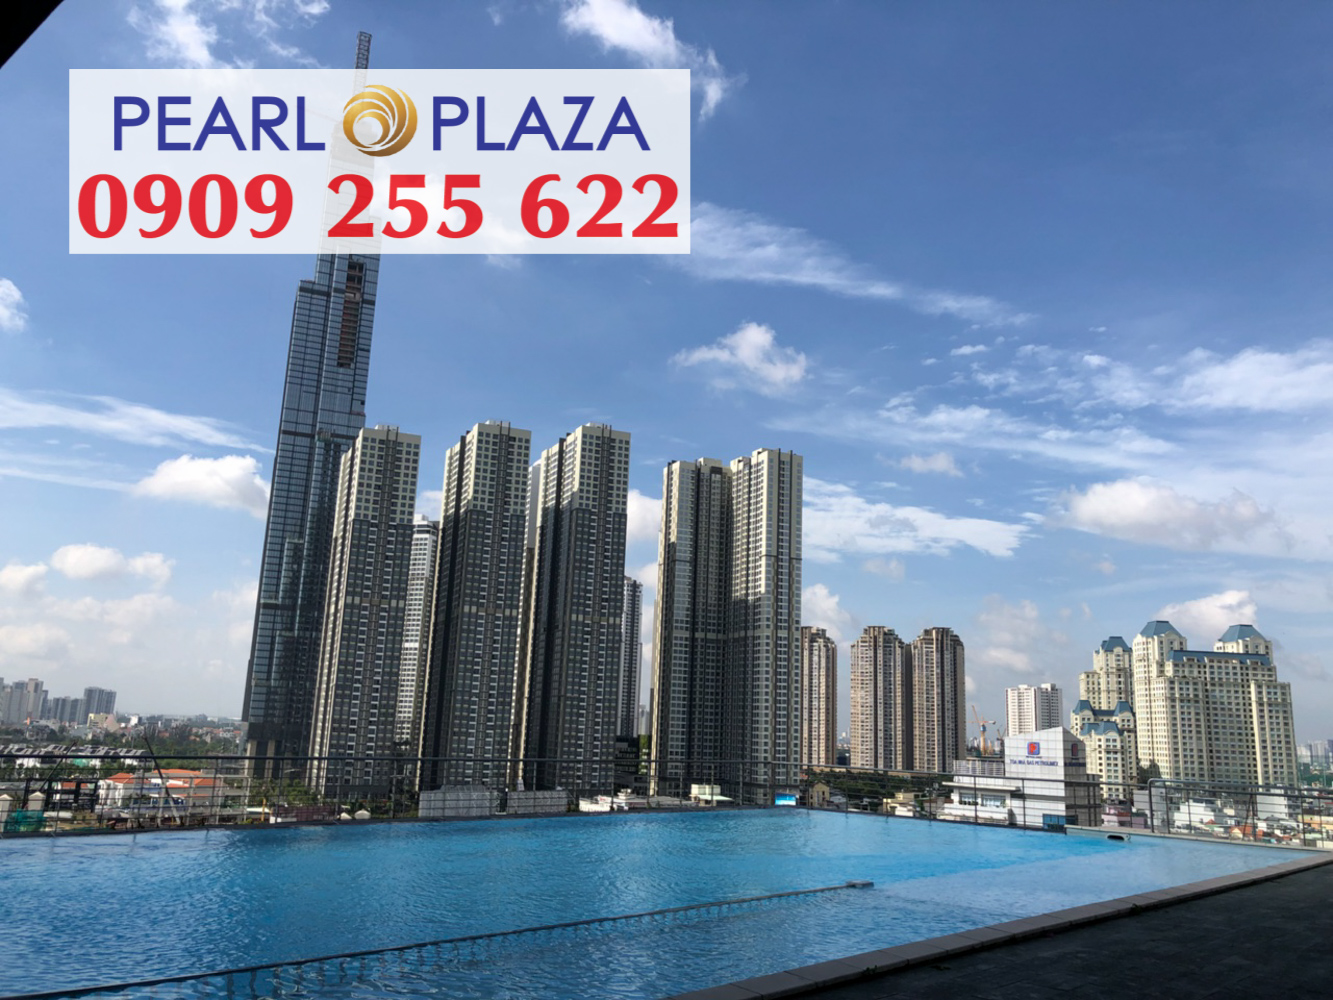 Cho thuê VĂN PHÒNG Pearl Plaza Q.Bình Thạnh có diện tích 100m2, tầng cao, nội thất đã set up. Hotline PKD 0909 255 622 